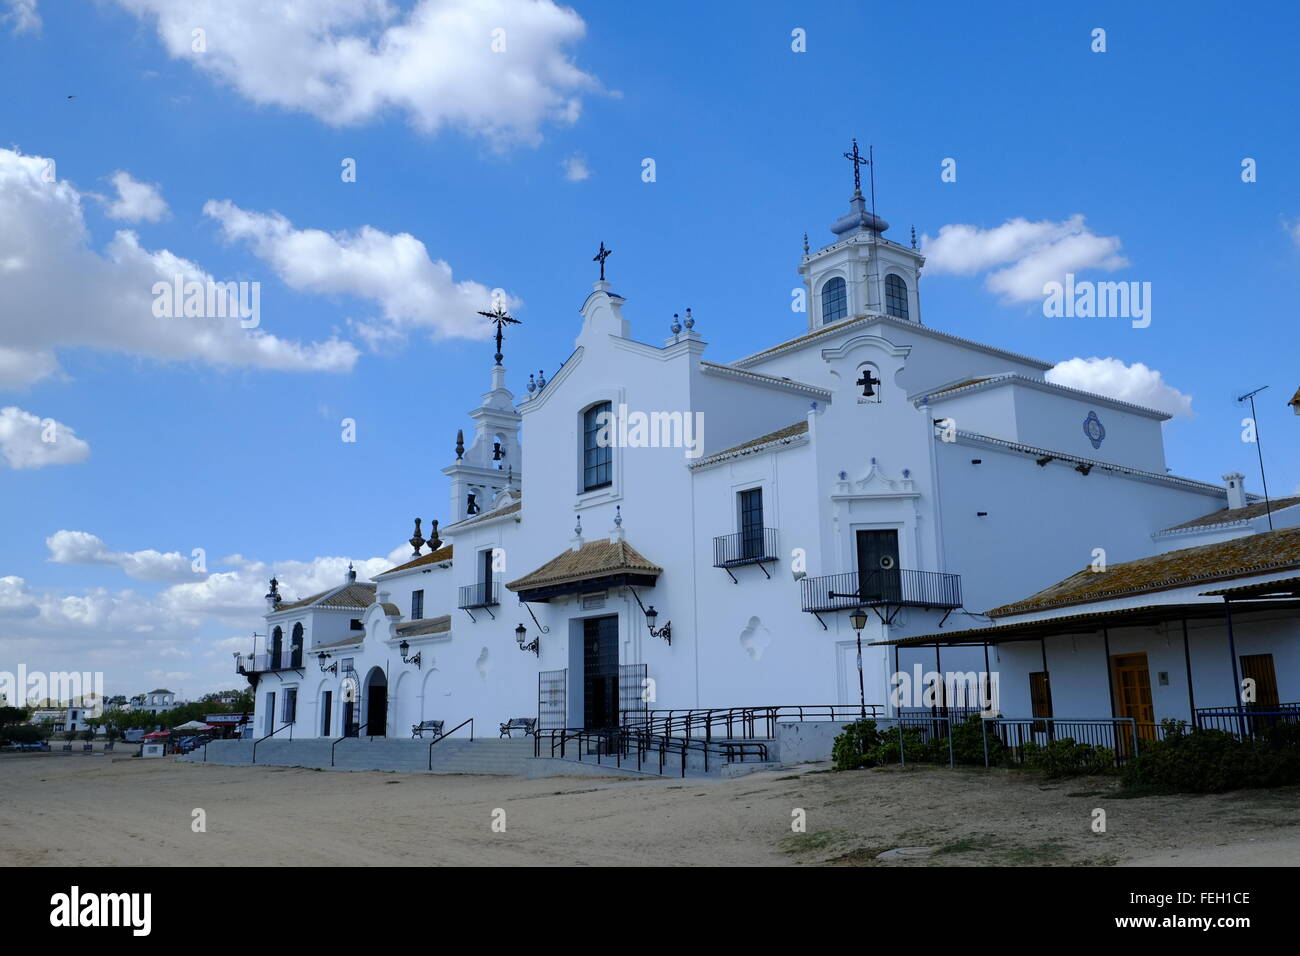 The Hermitage of El Rocío. El Rocio, Almonte, Province of Huelva, Andalusia, Spain Stock Photo